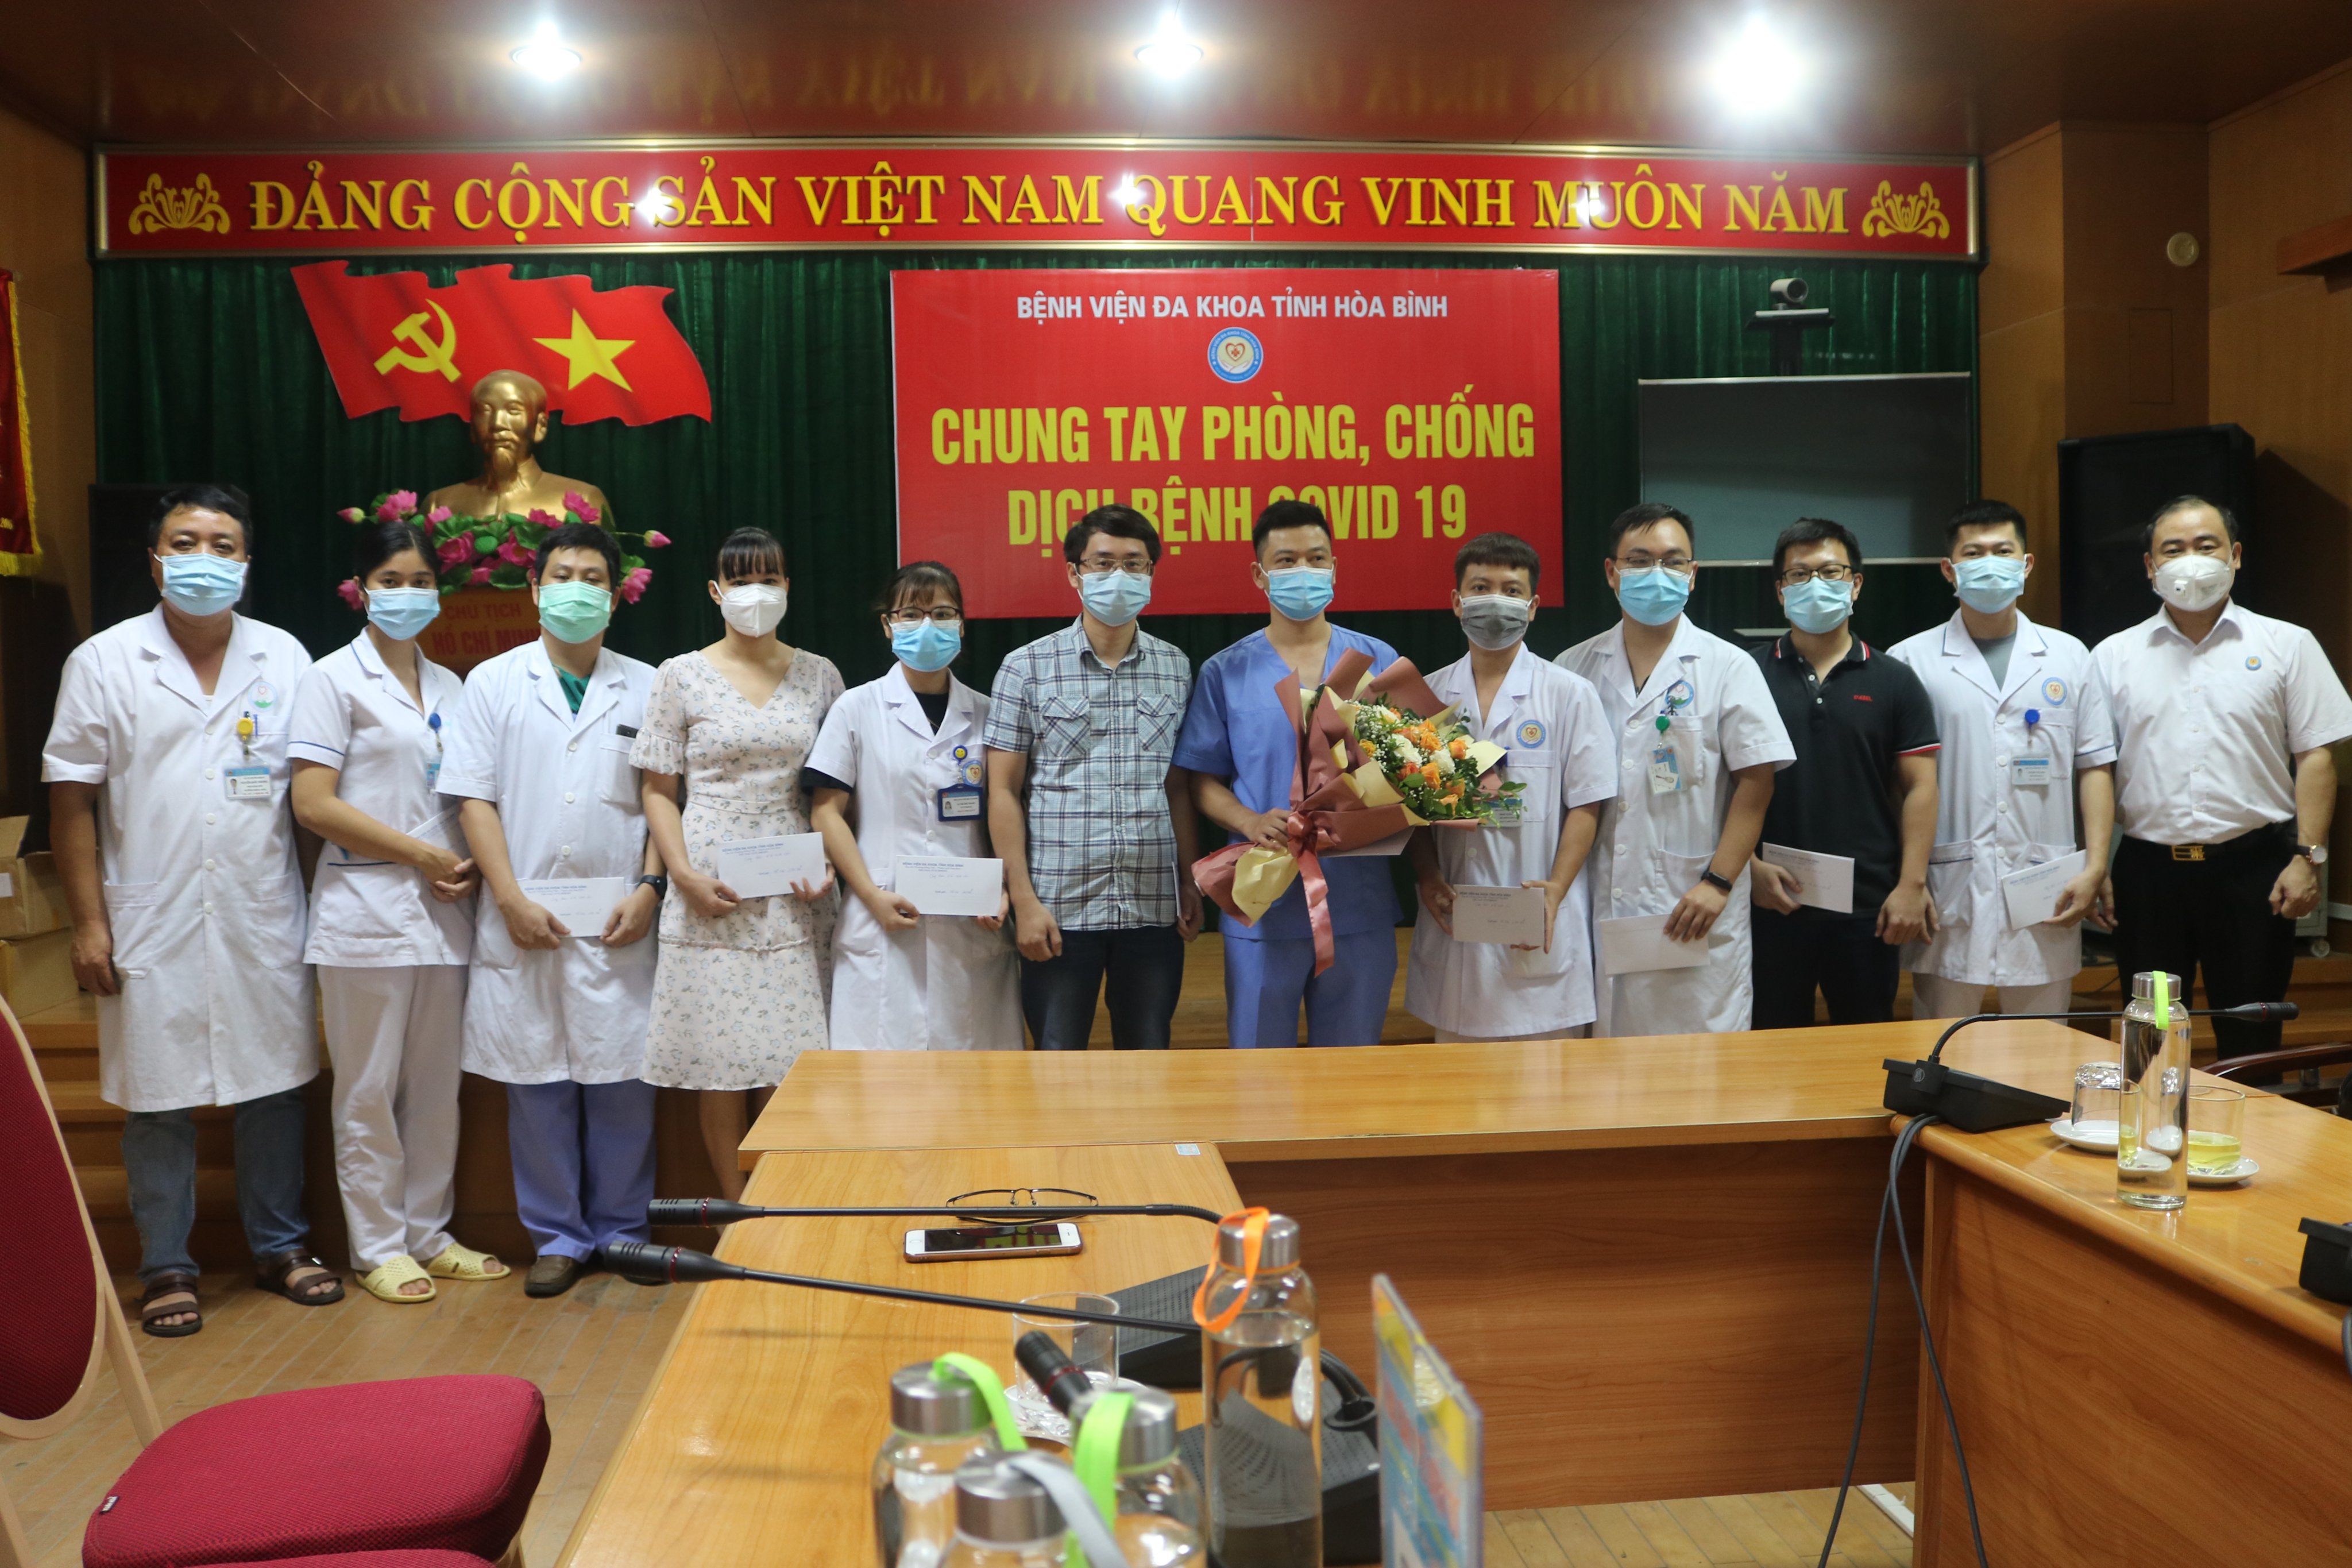 Bệnh viện Đa khoa tỉnh Hoà Bình tổ chức ra quân đợt 5 hỗ trợ chống dịch Covid-19 tại Thủ đô Hà Nội 